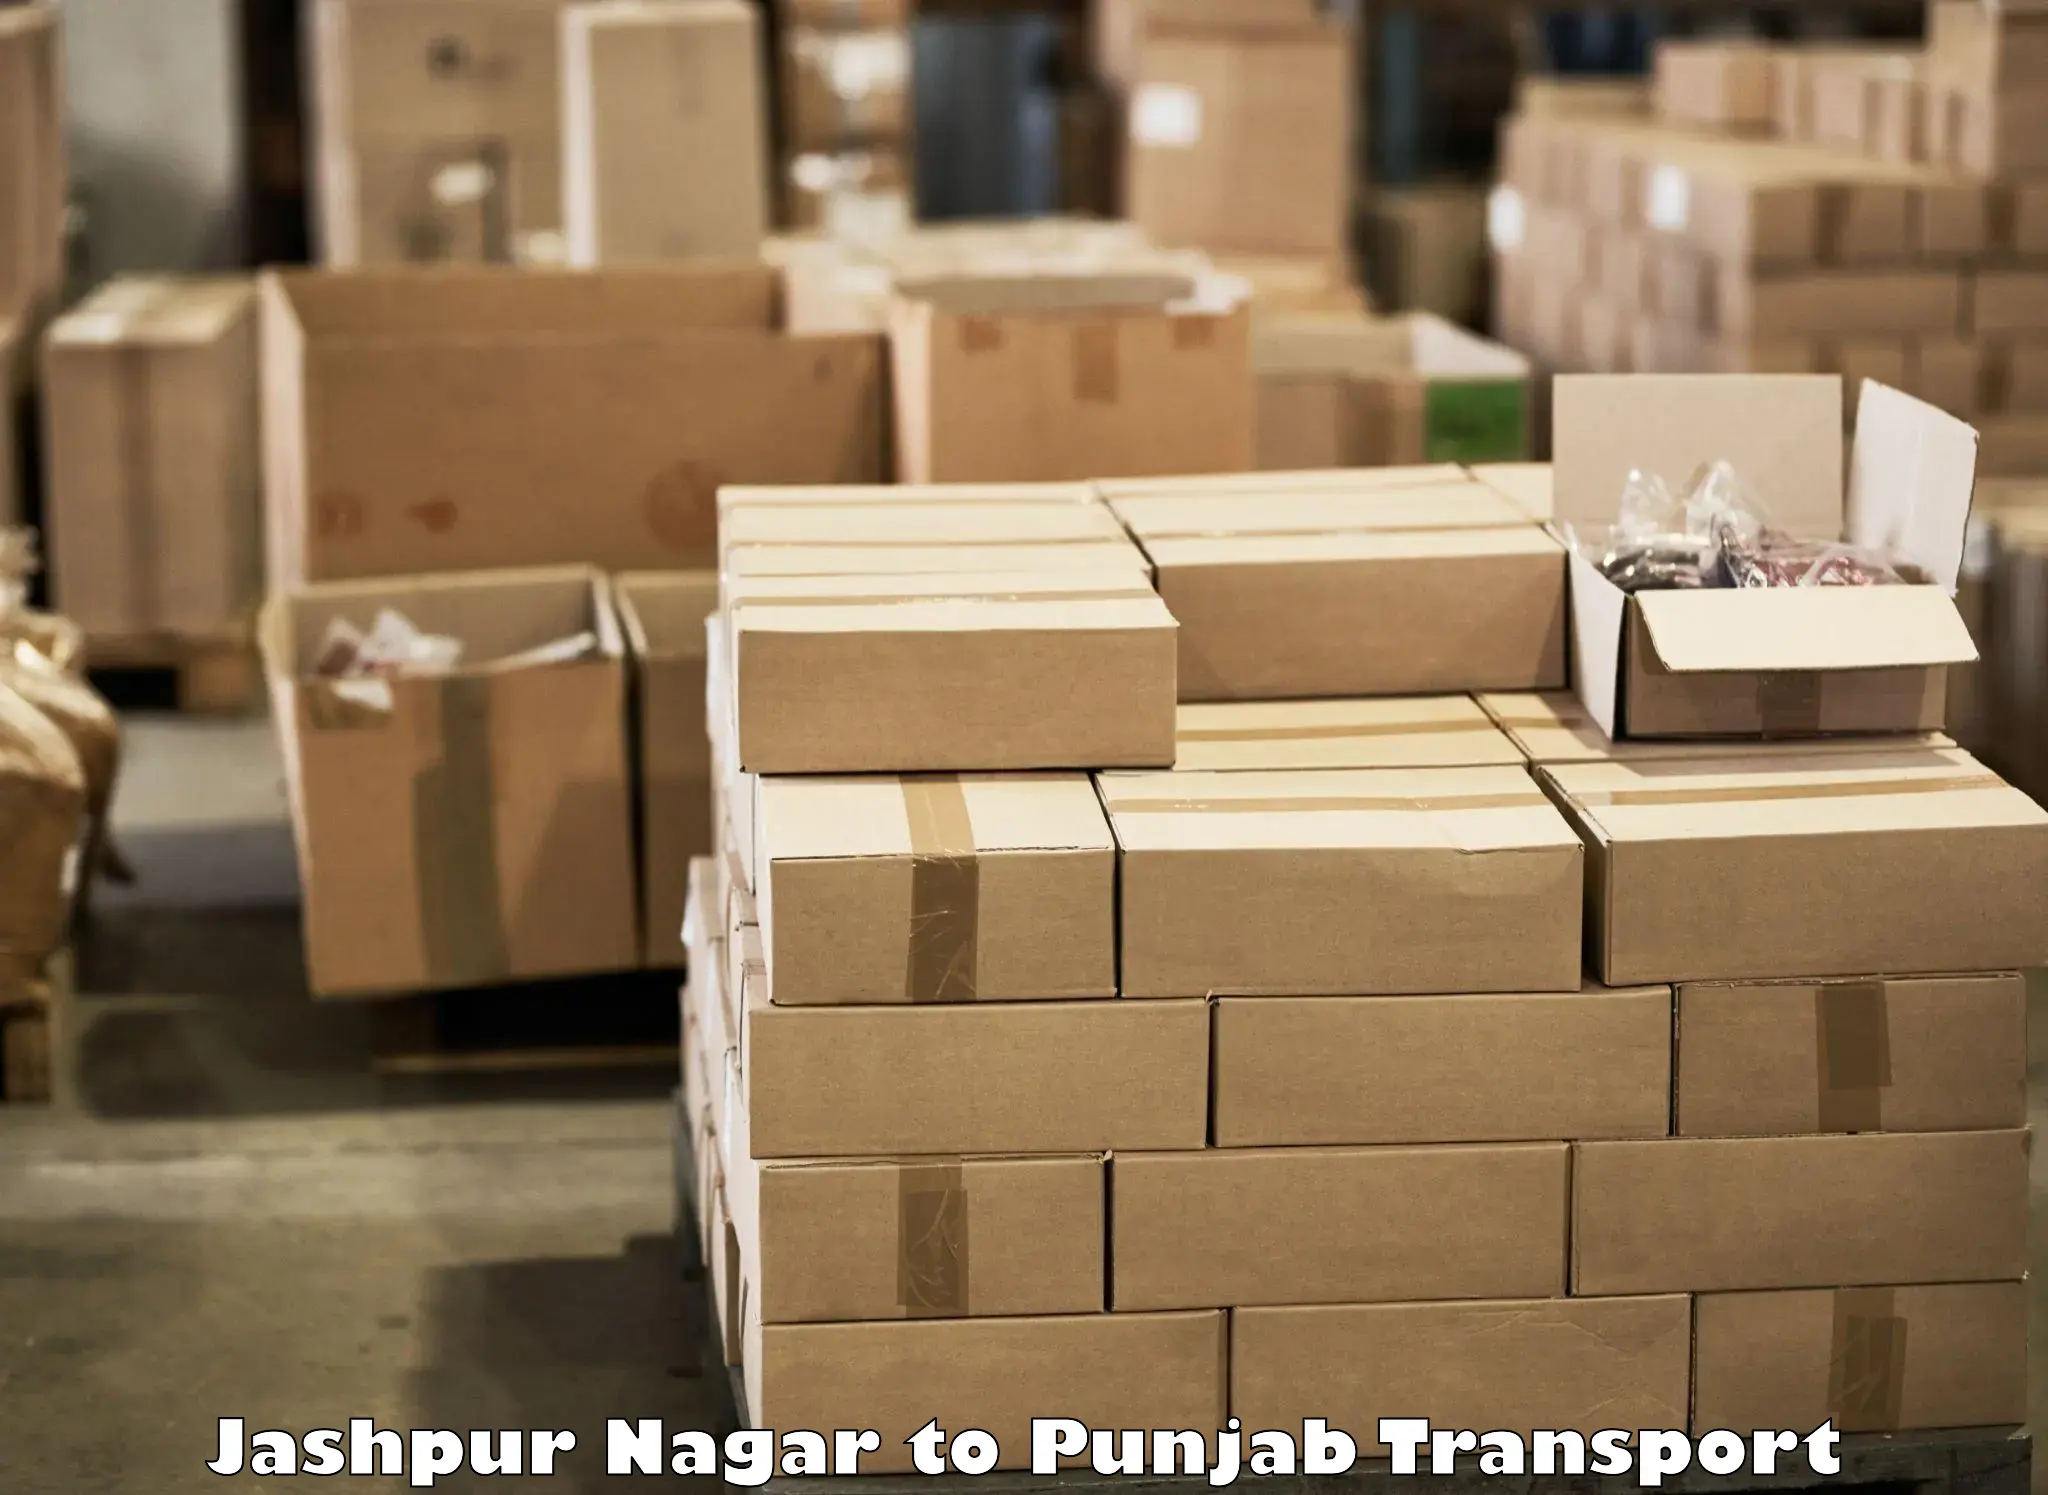 Nearby transport service Jashpur Nagar to Sirhind Fatehgarh